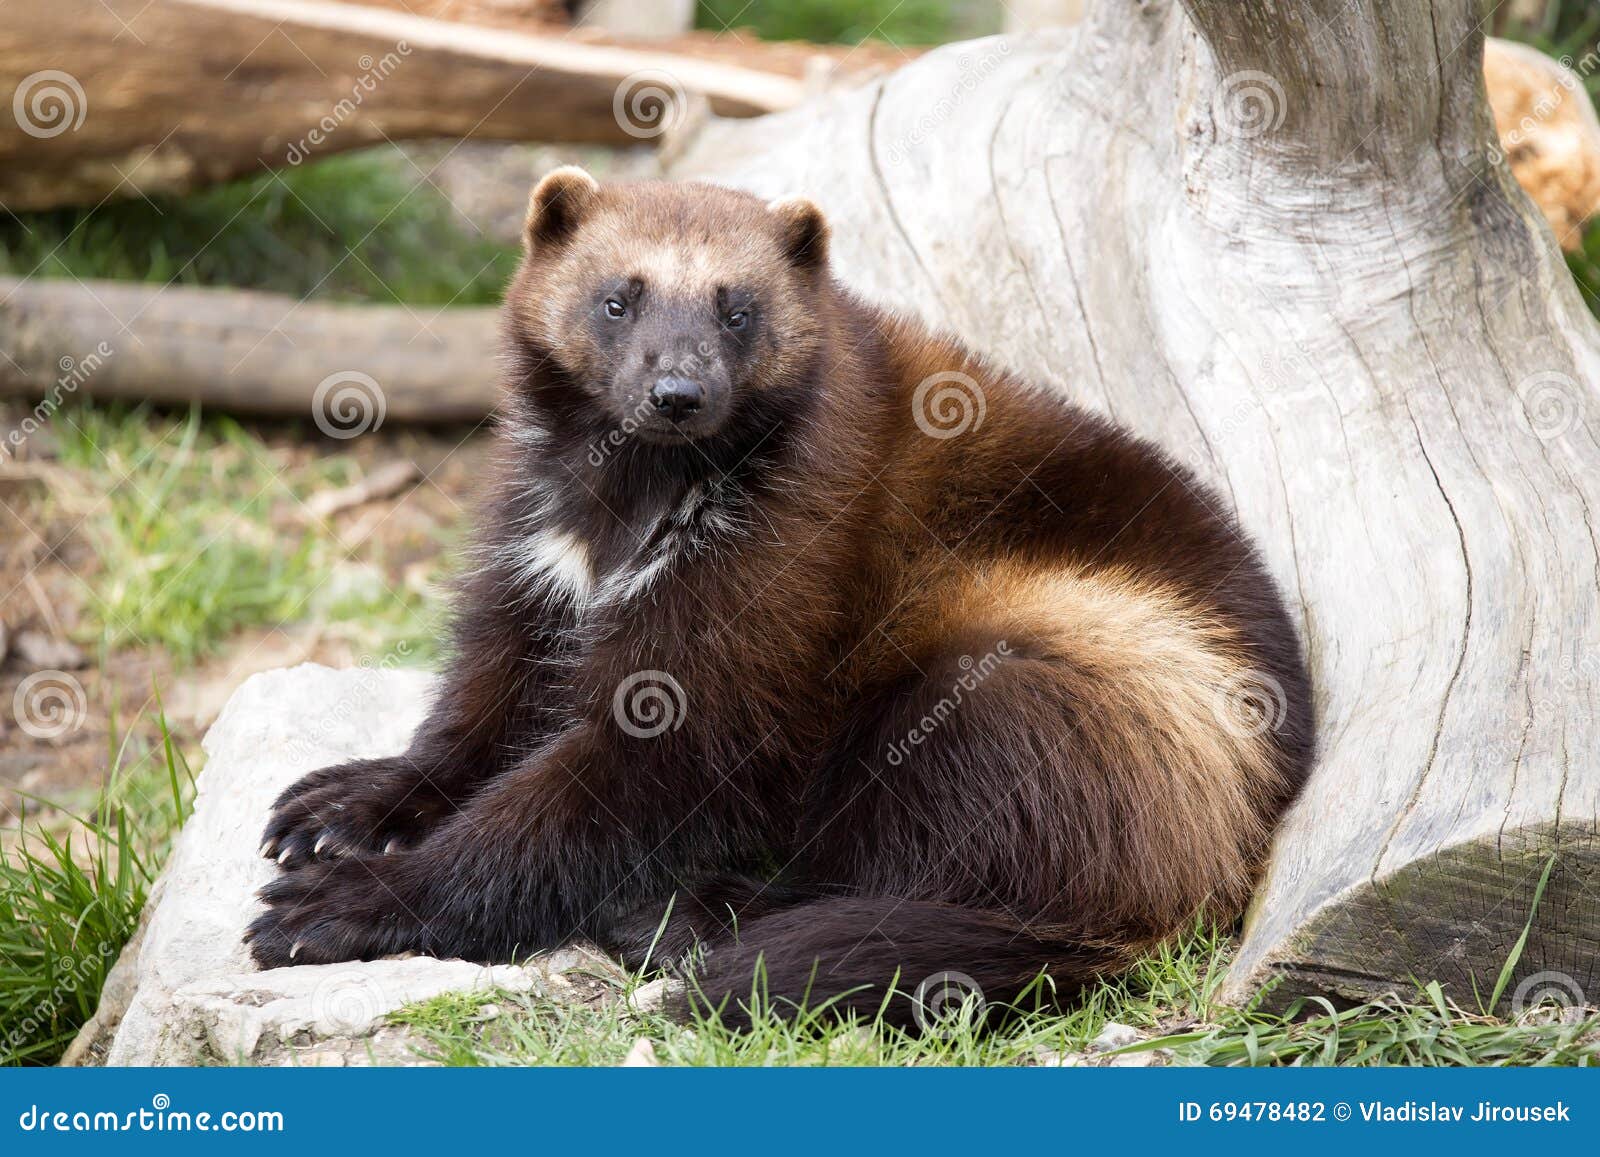 狼獾：西伯利亚森林里不知疲觉的流浪者